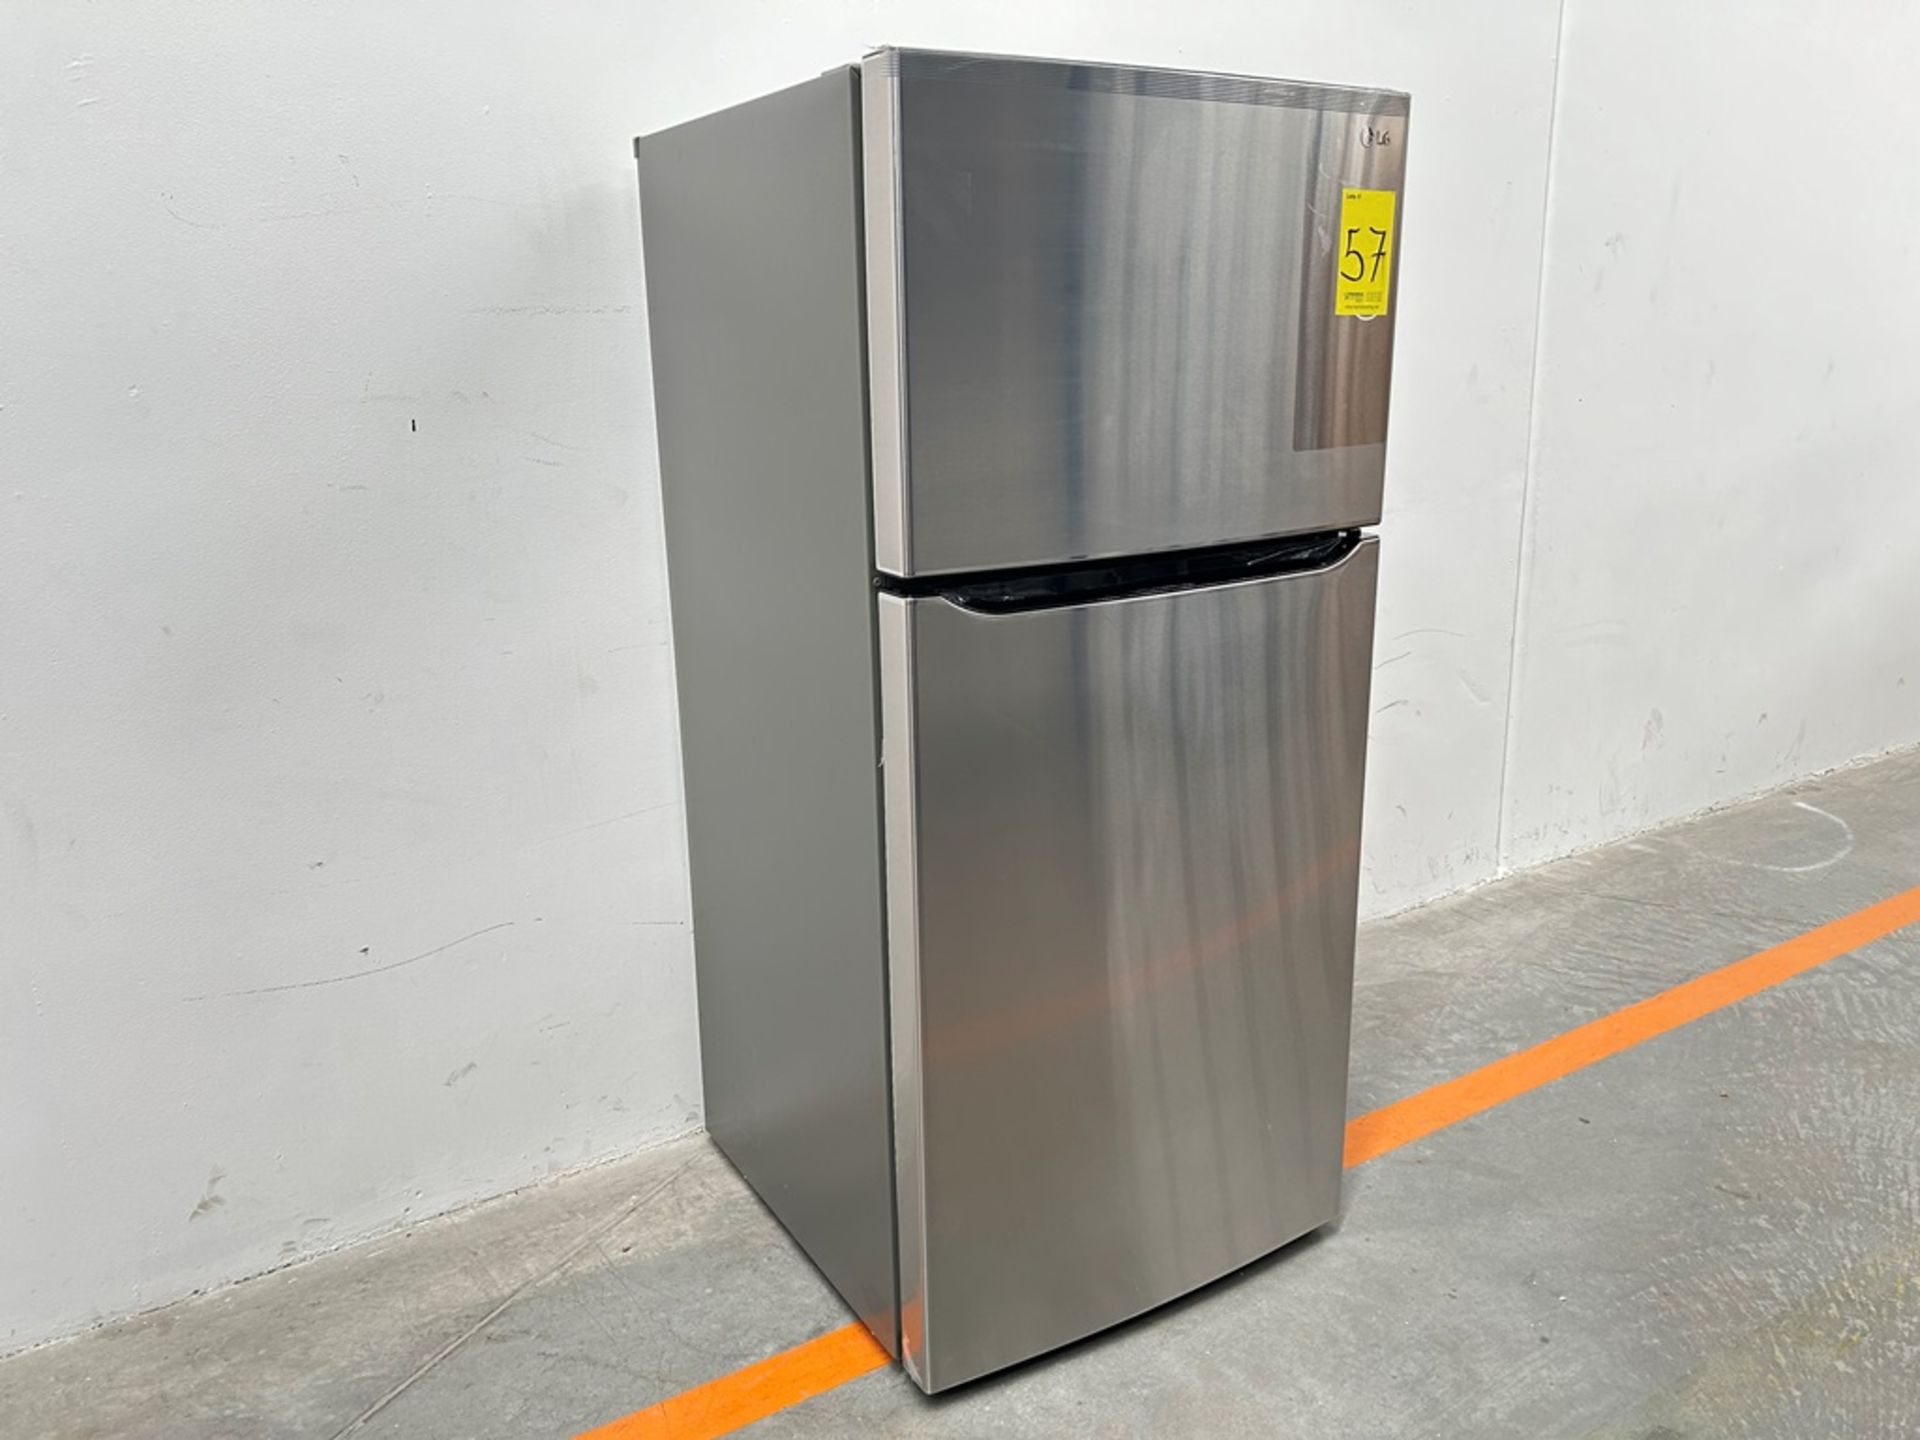 (NUEVO) Refrigerador Marca LG, Modelo LT57BPSX, Serie 2D689, Color GRIS - Bild 3 aus 7